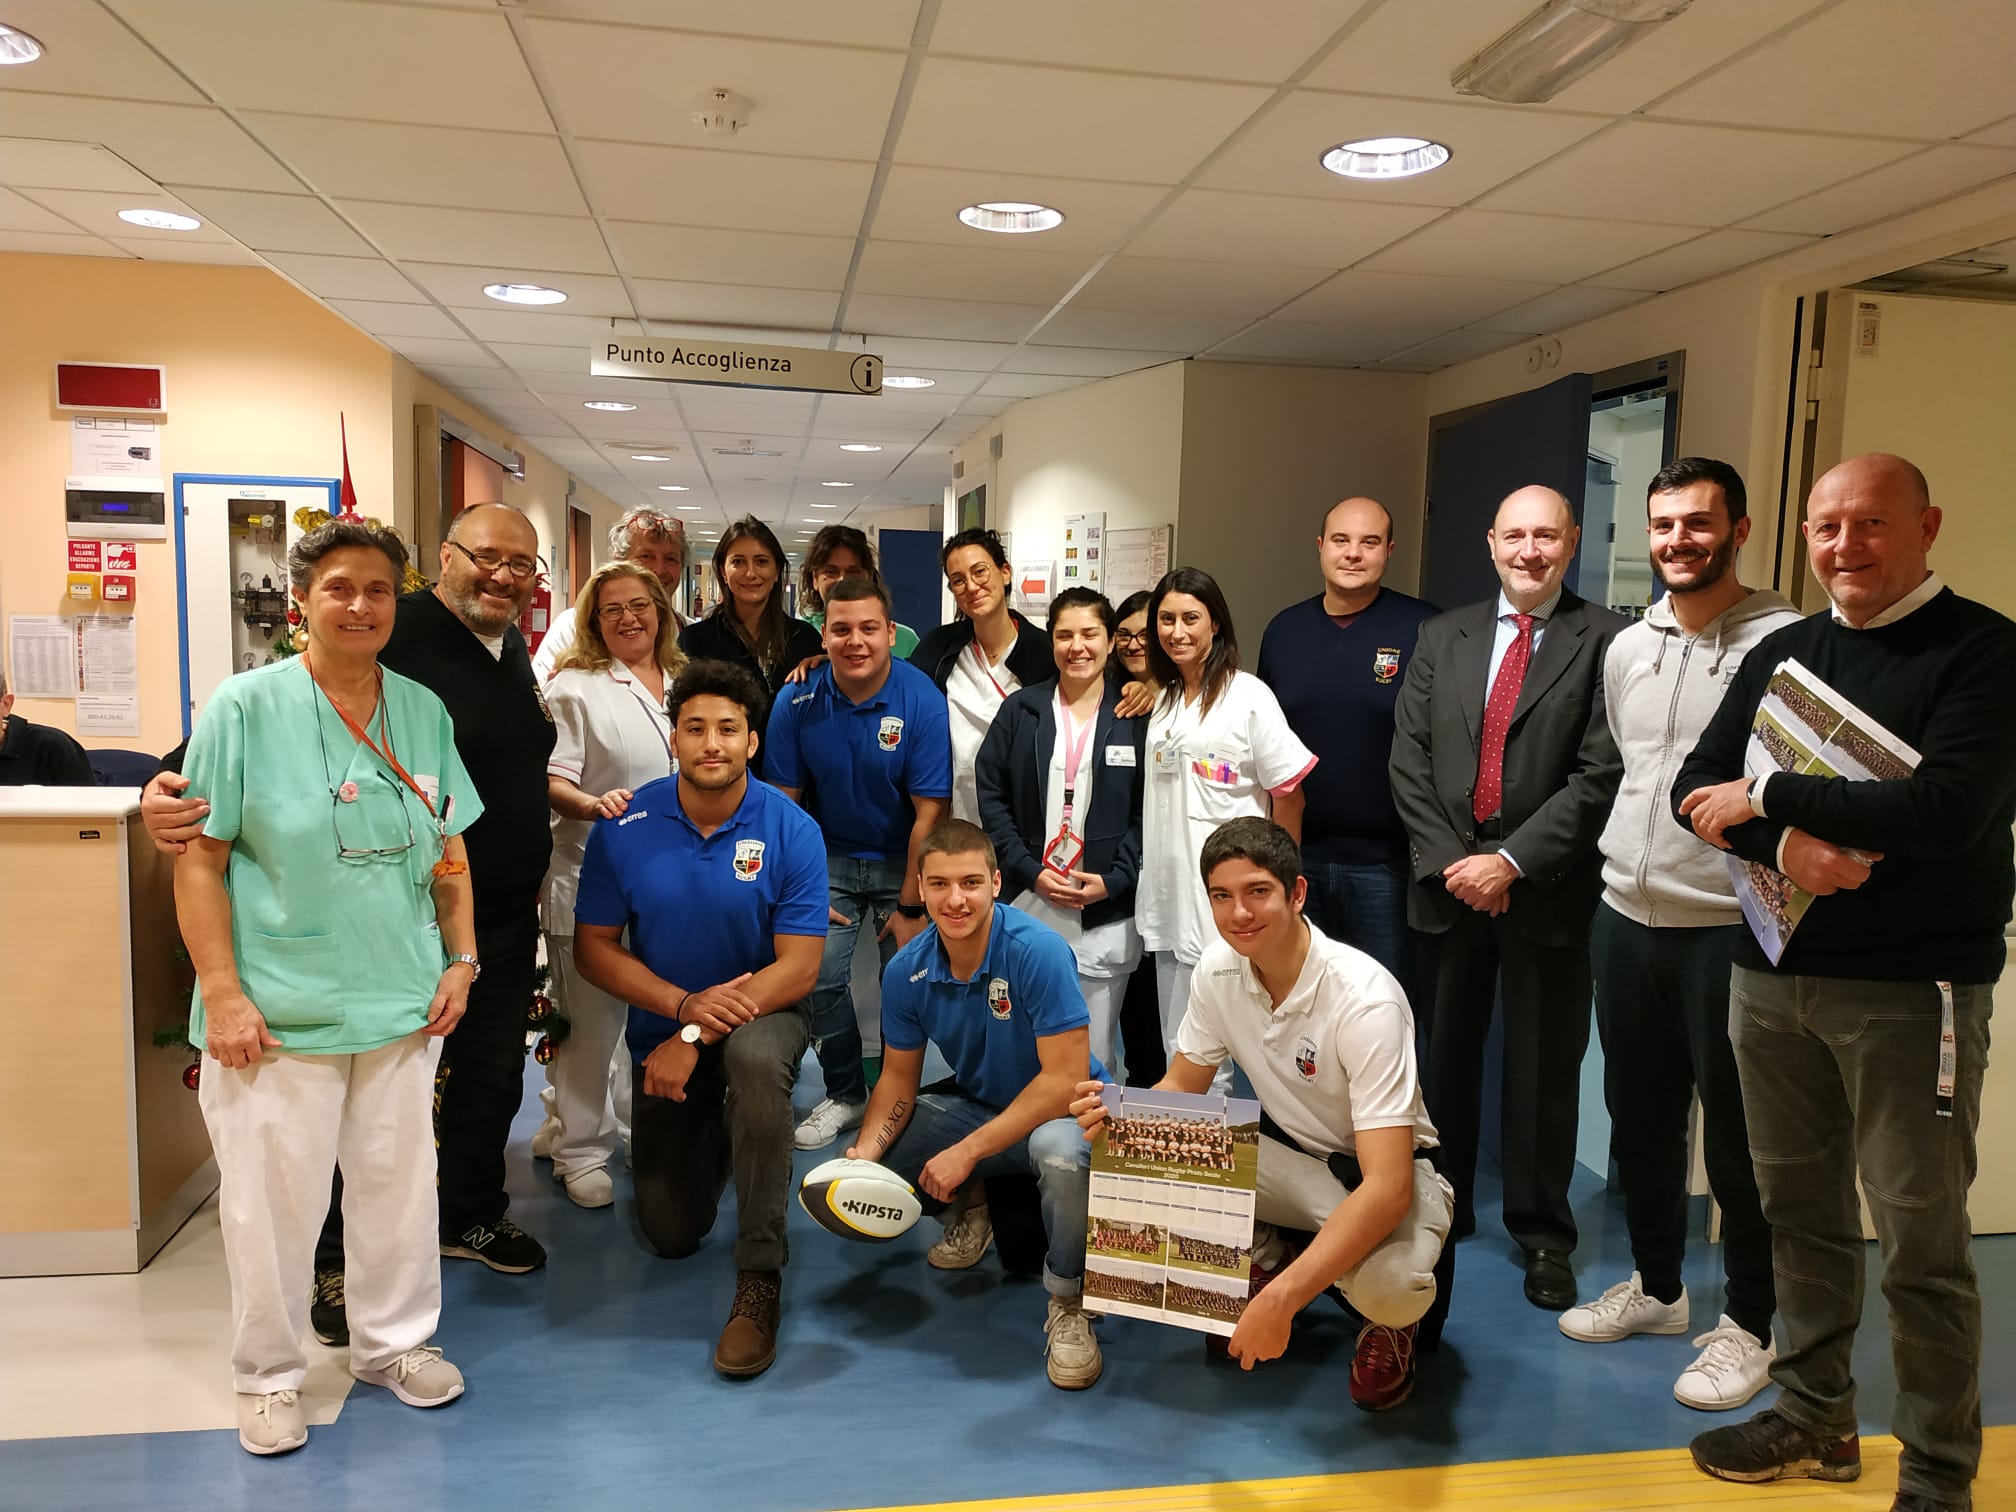 La Fondazione Ami di Prato porta in ospedale un Concerto e in pediatria i giocatori di Rugby 